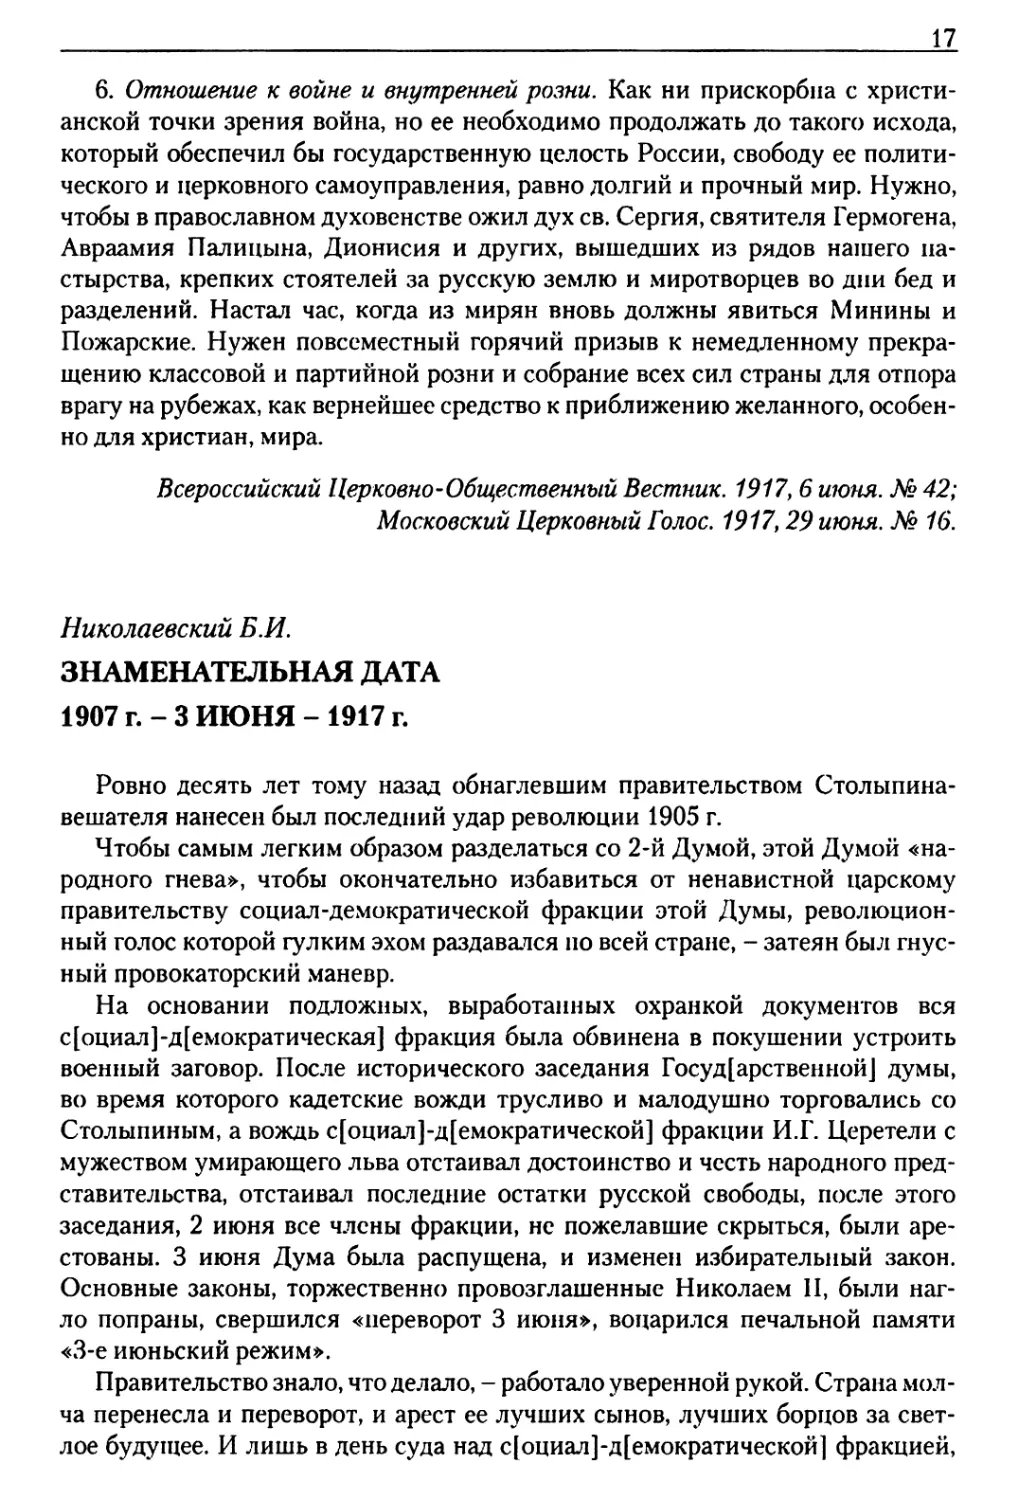 Николаевский Б.И. Знаменательная дата. 1907 г. - 3 июня - 1917 г.